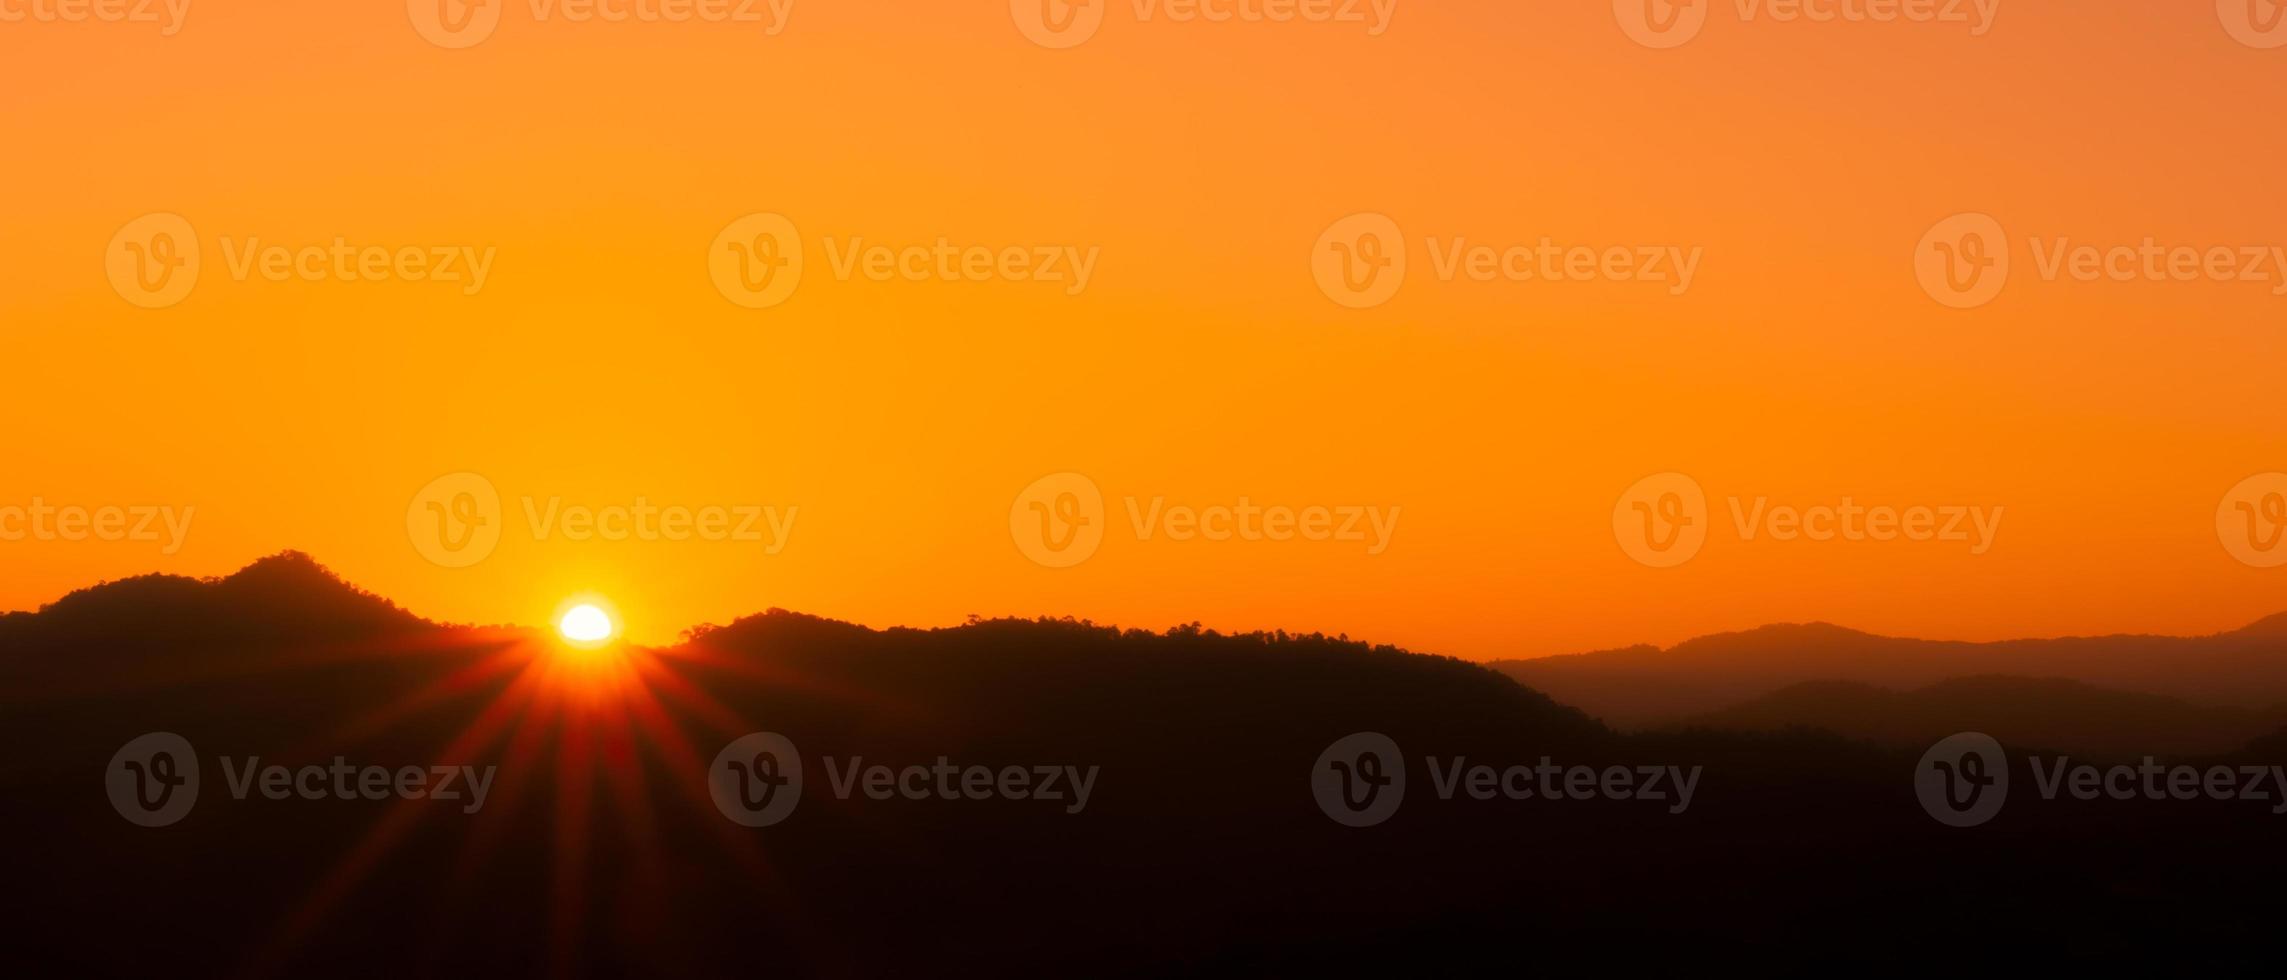 prachtig landschap van bergen en zonsopgang met oranje lucht foto